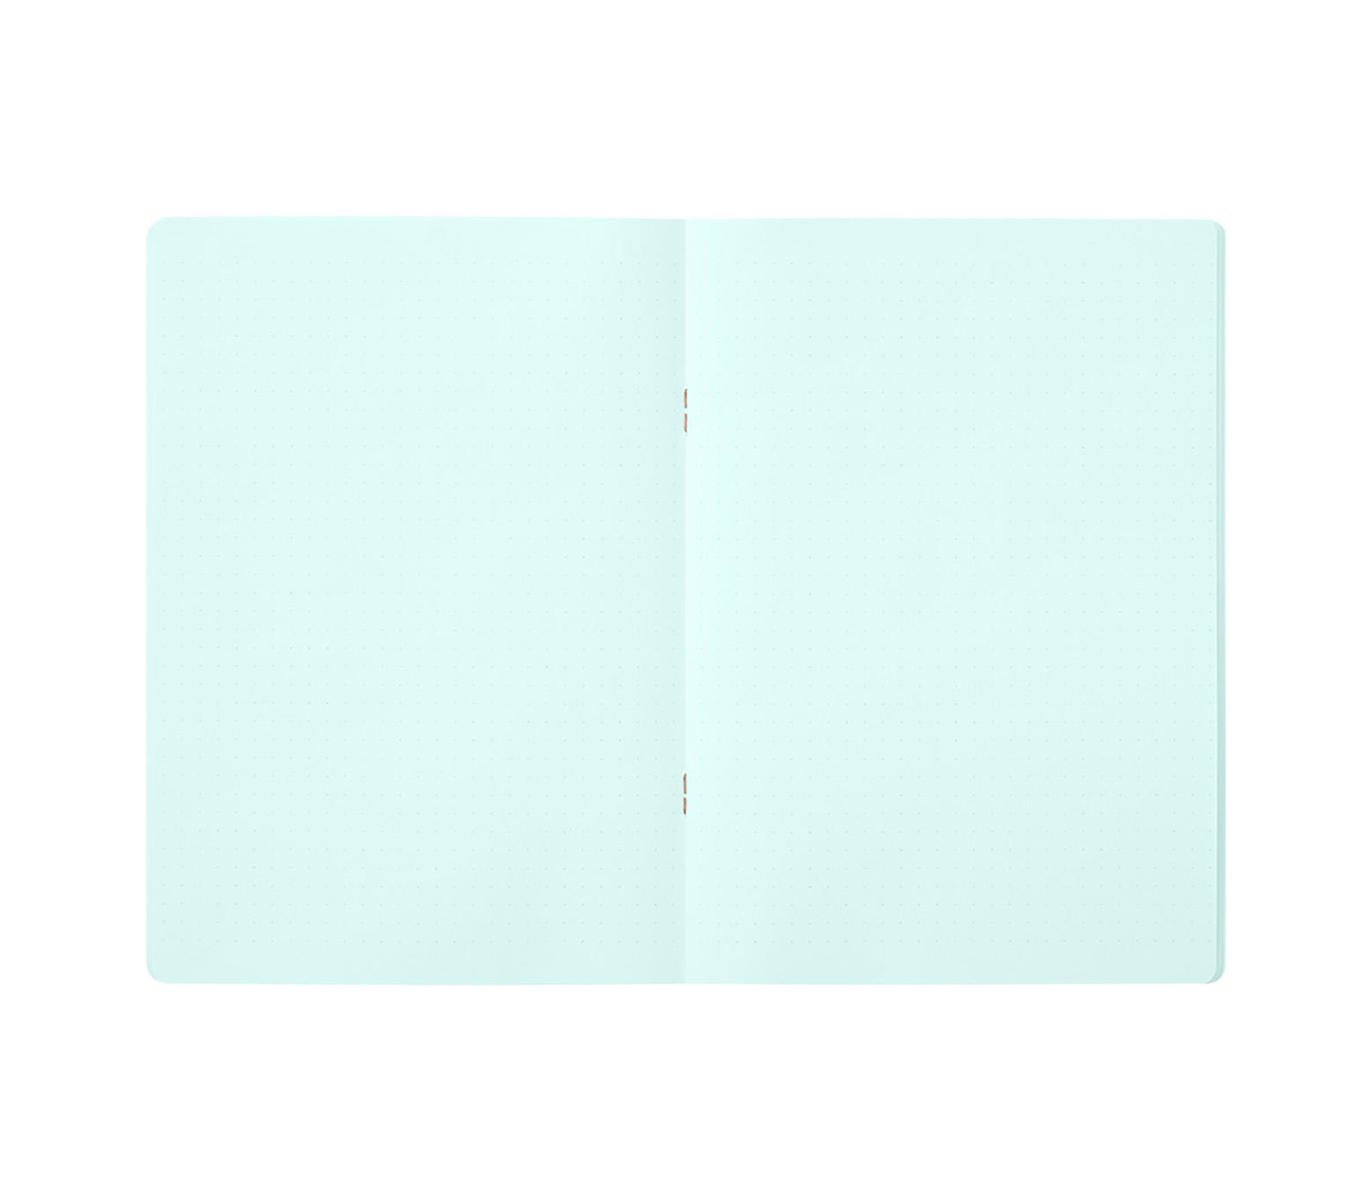 A5 Blue Dot Grid Notebook